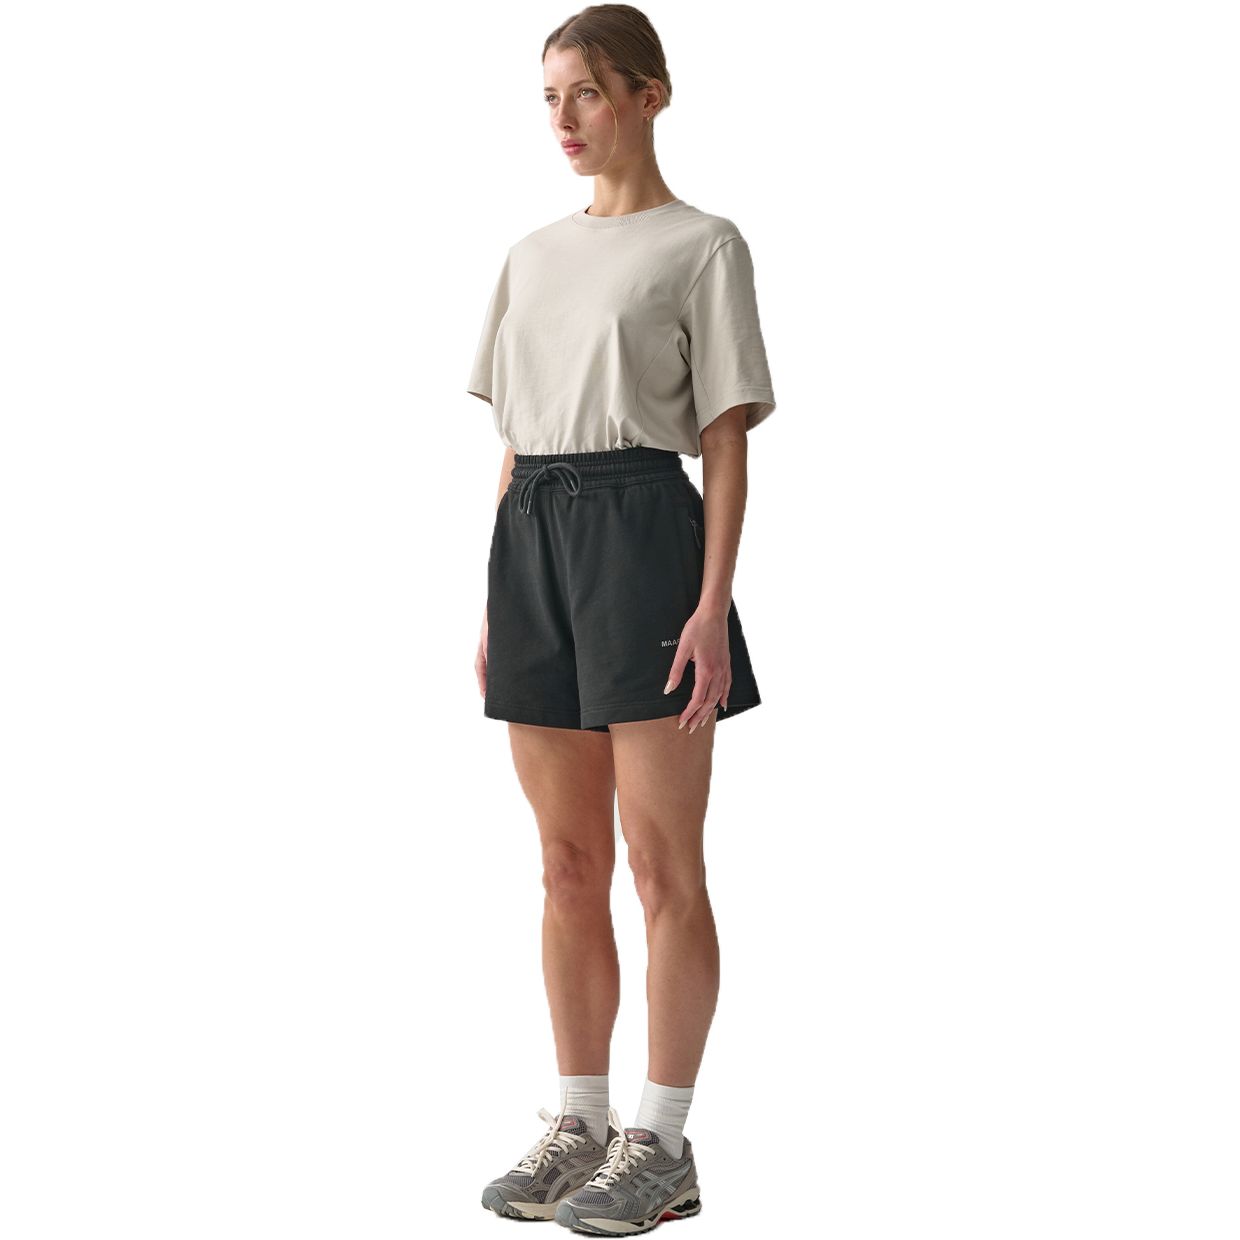 Produktbild von MAAP Essentials Sweat Short Damen - schwarz